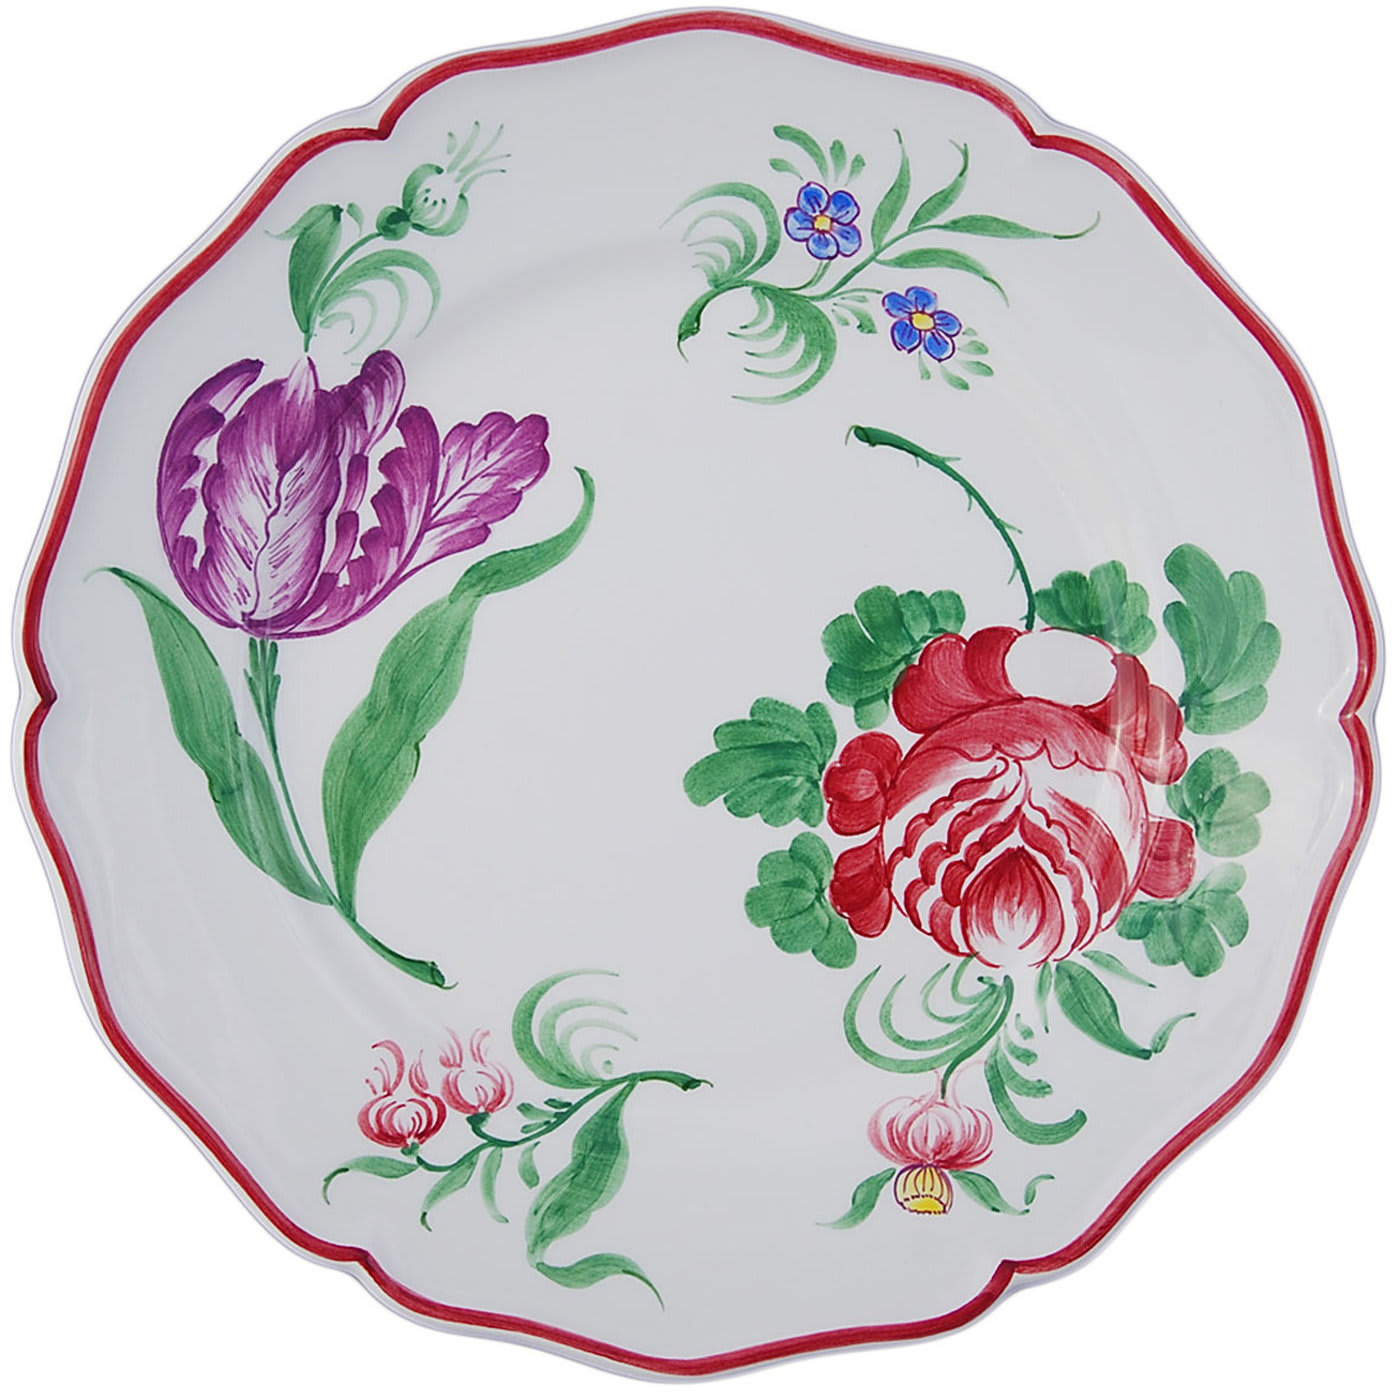 Fiori White Ceramic Plates Set for Two - Este Ceramiche